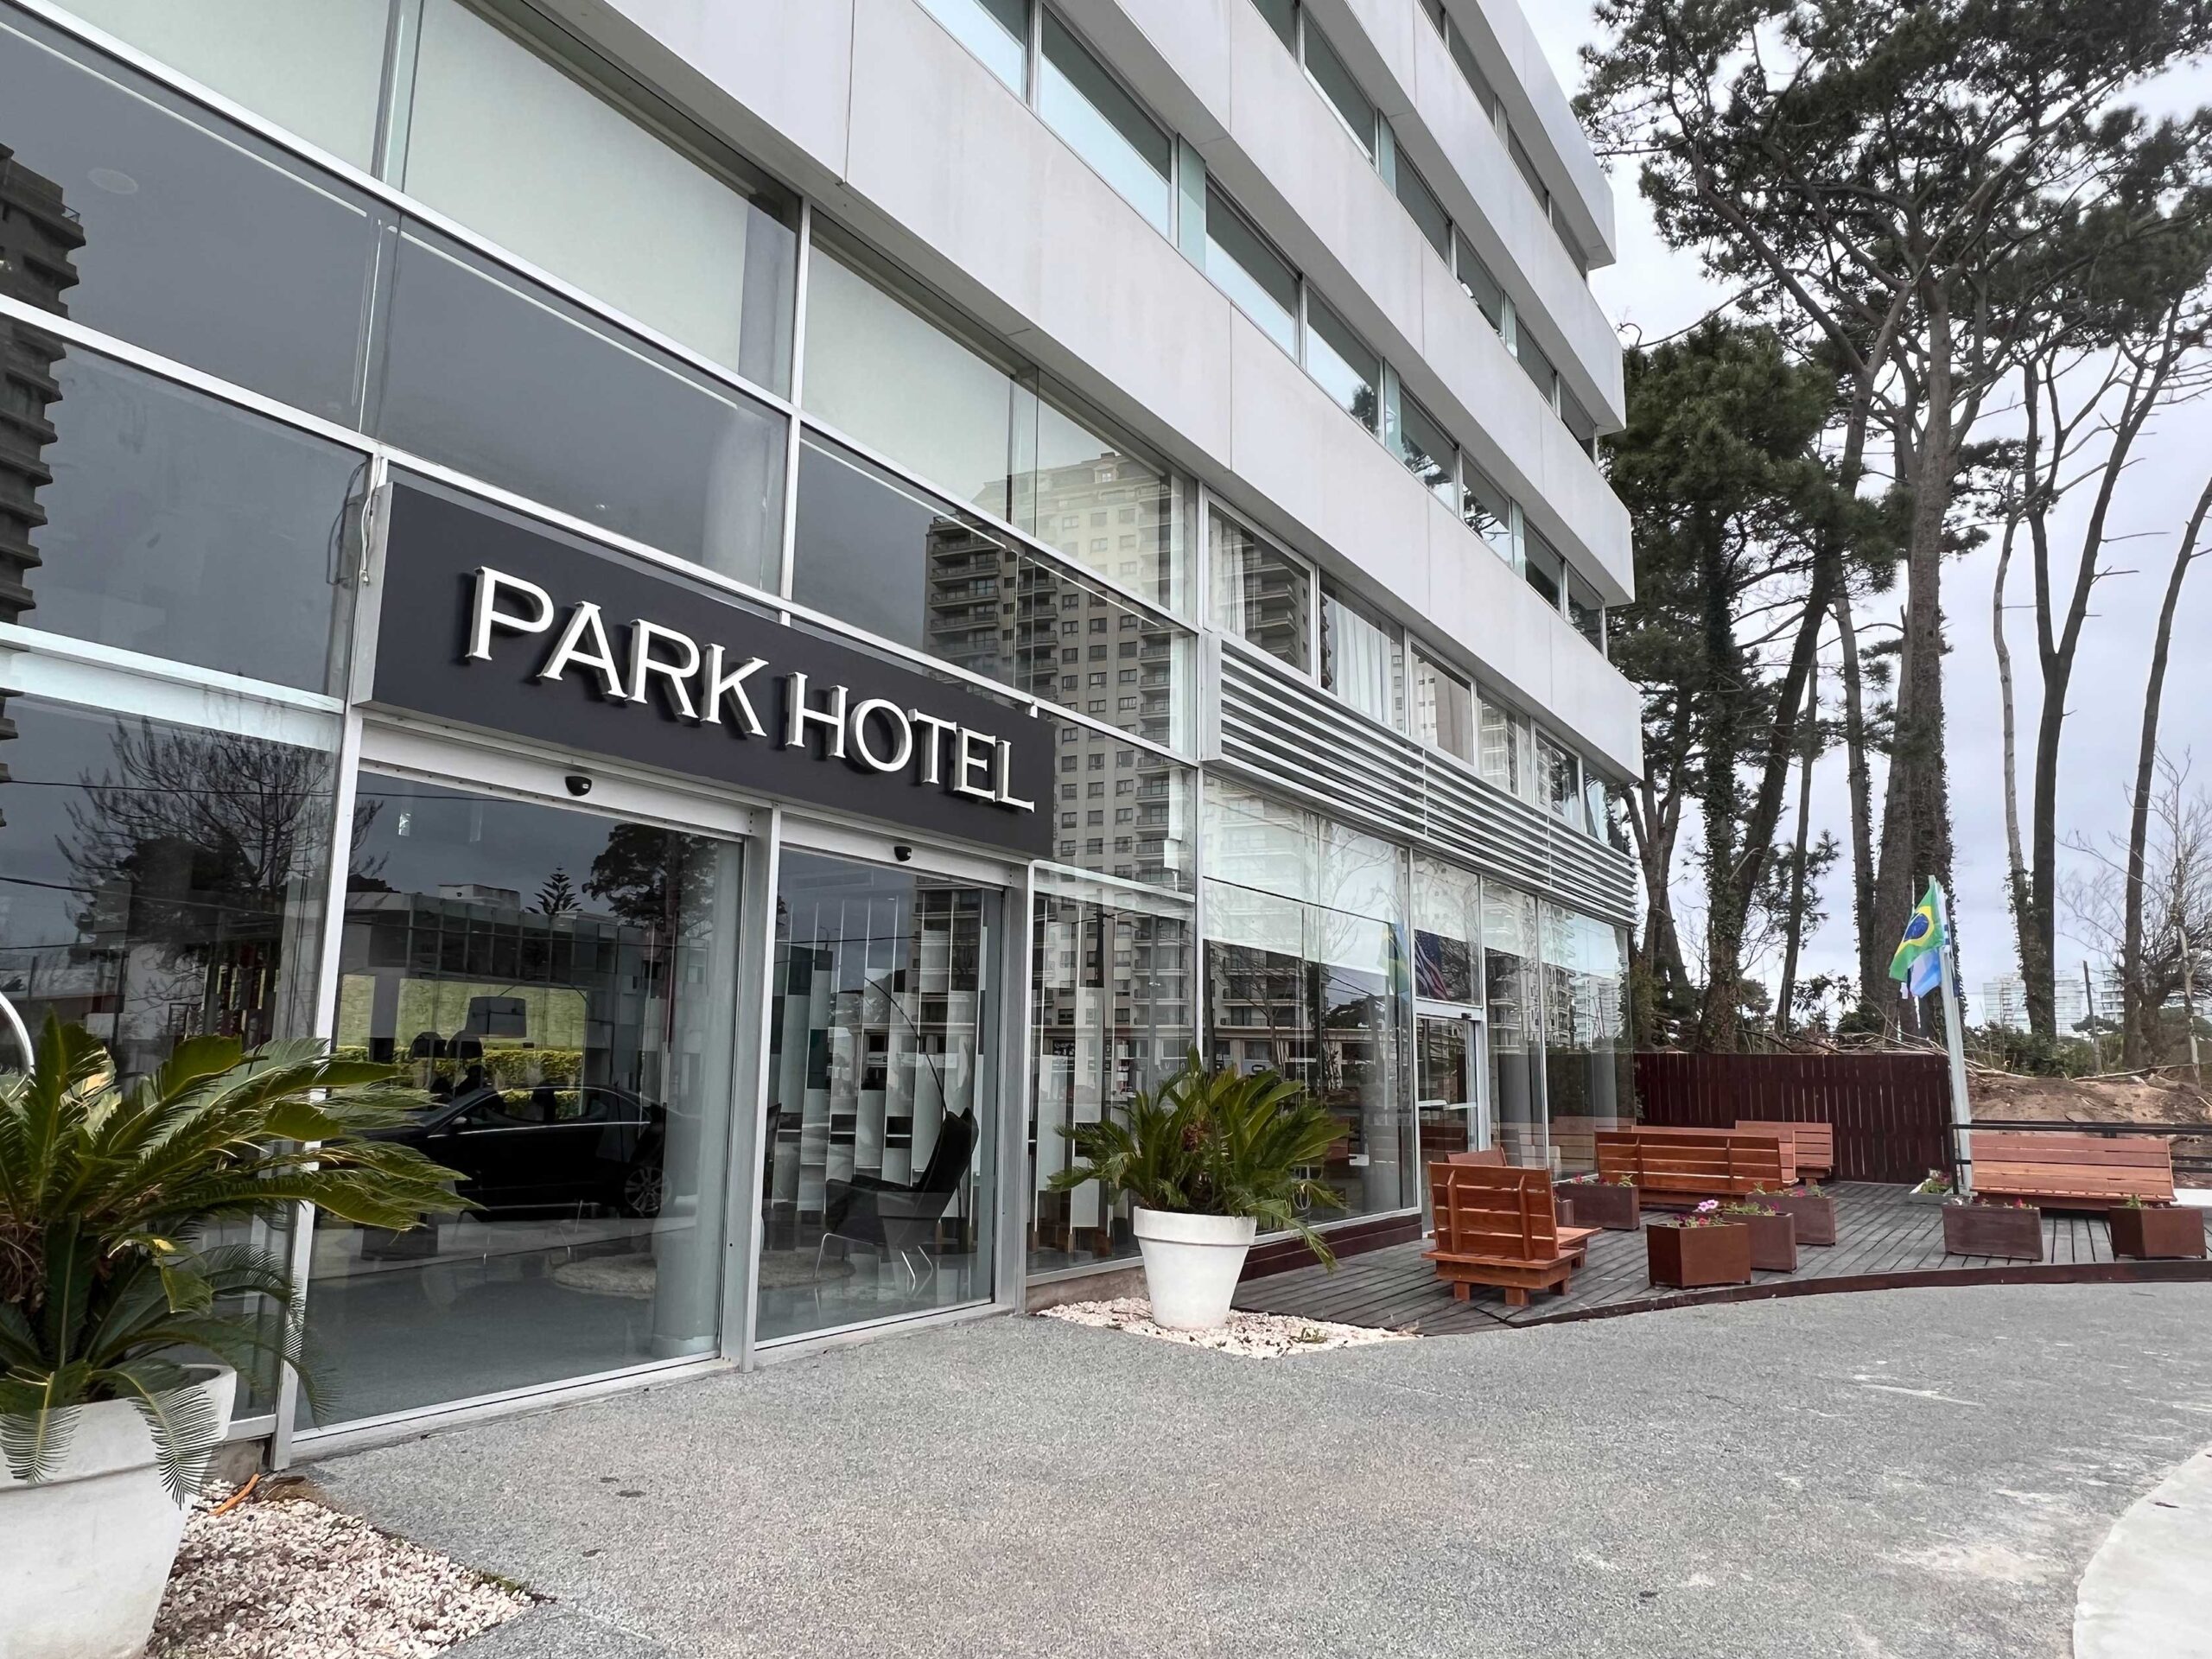 Park Hotel Punta del Este abrió sus puertas en la ciudad esteña